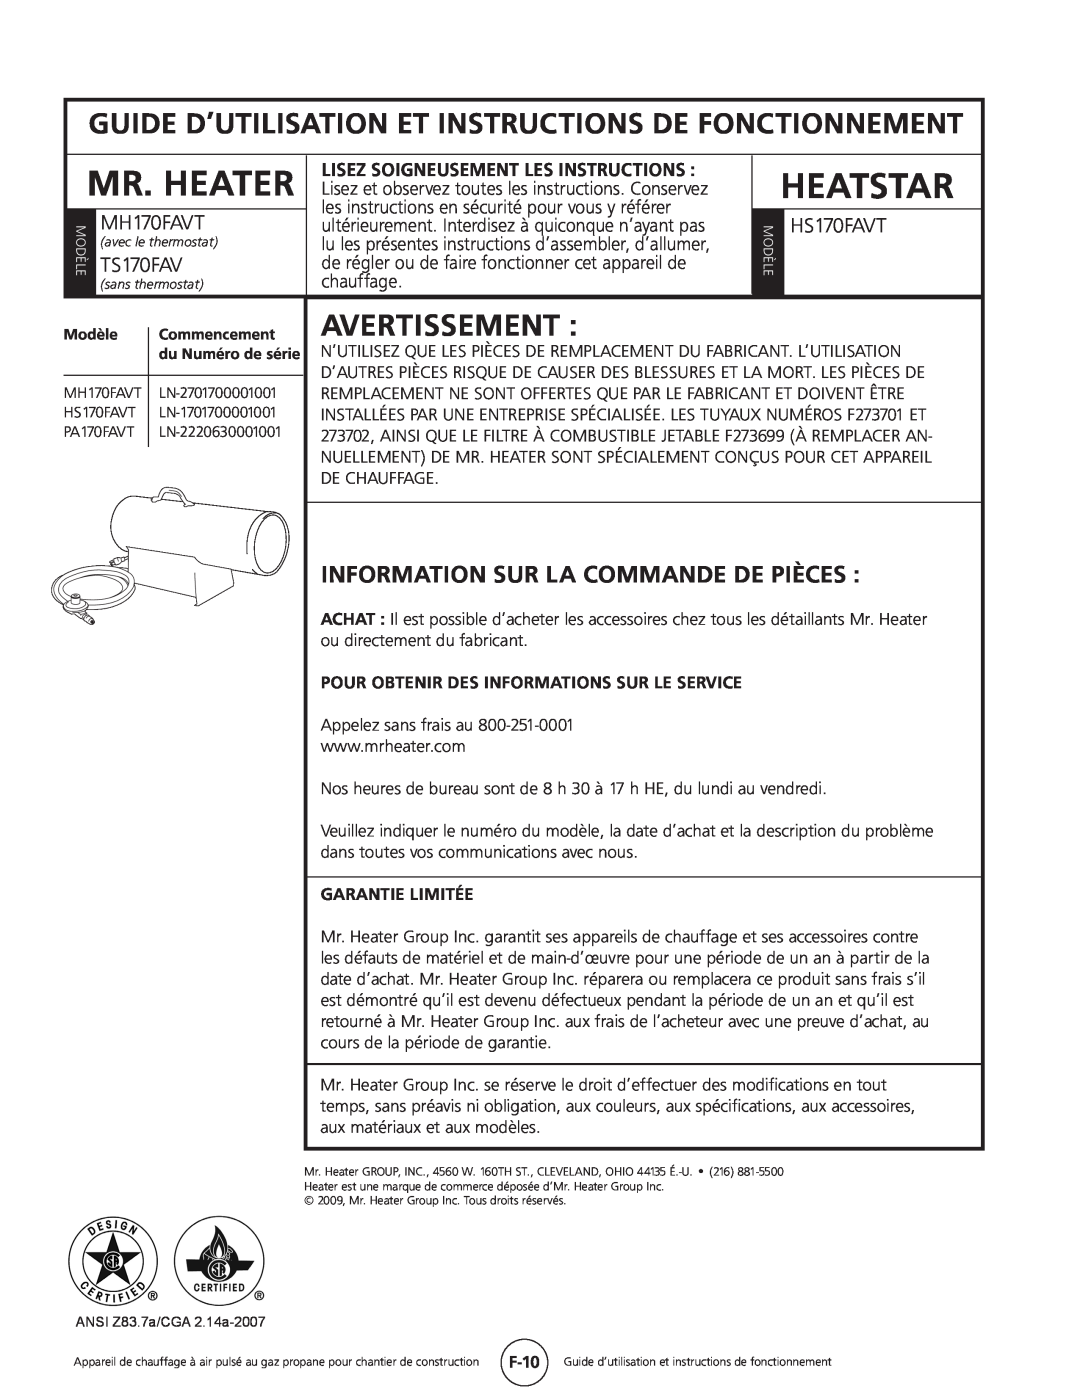 Mr. Heater Information Sur La Commande De Pièces, Mr. Heater, Heatstar, Avertissement, TS170FAV, MH170FAVT, HS170FAVT 